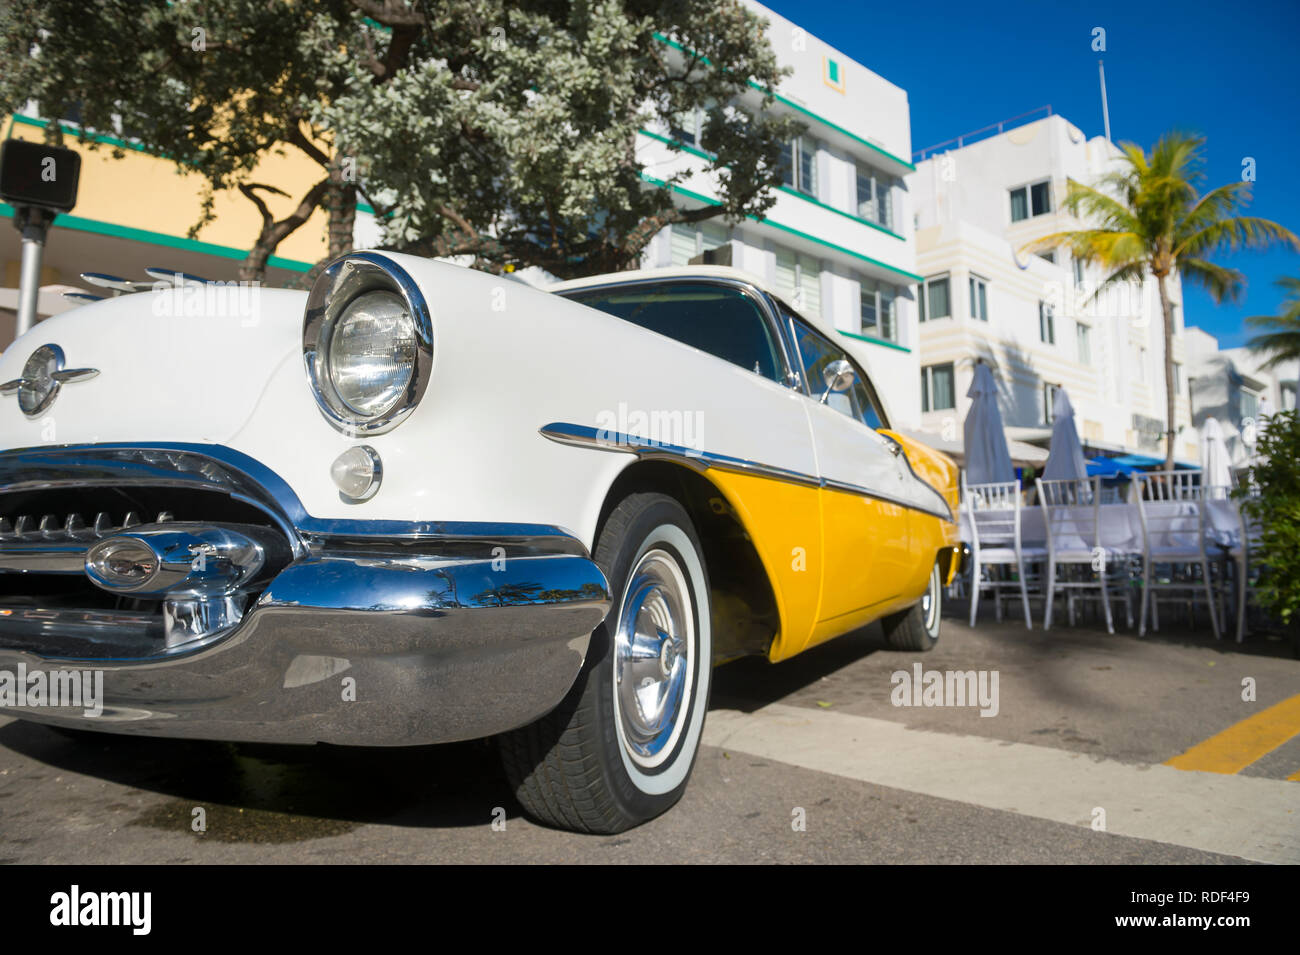 MIAMI - 31. Dezember 2018: Helle malerischen Blick auf klassische amerikanische Auto Ergänzung des Art Deco Architektur des Ocean Drive in South Beach. Stockfoto